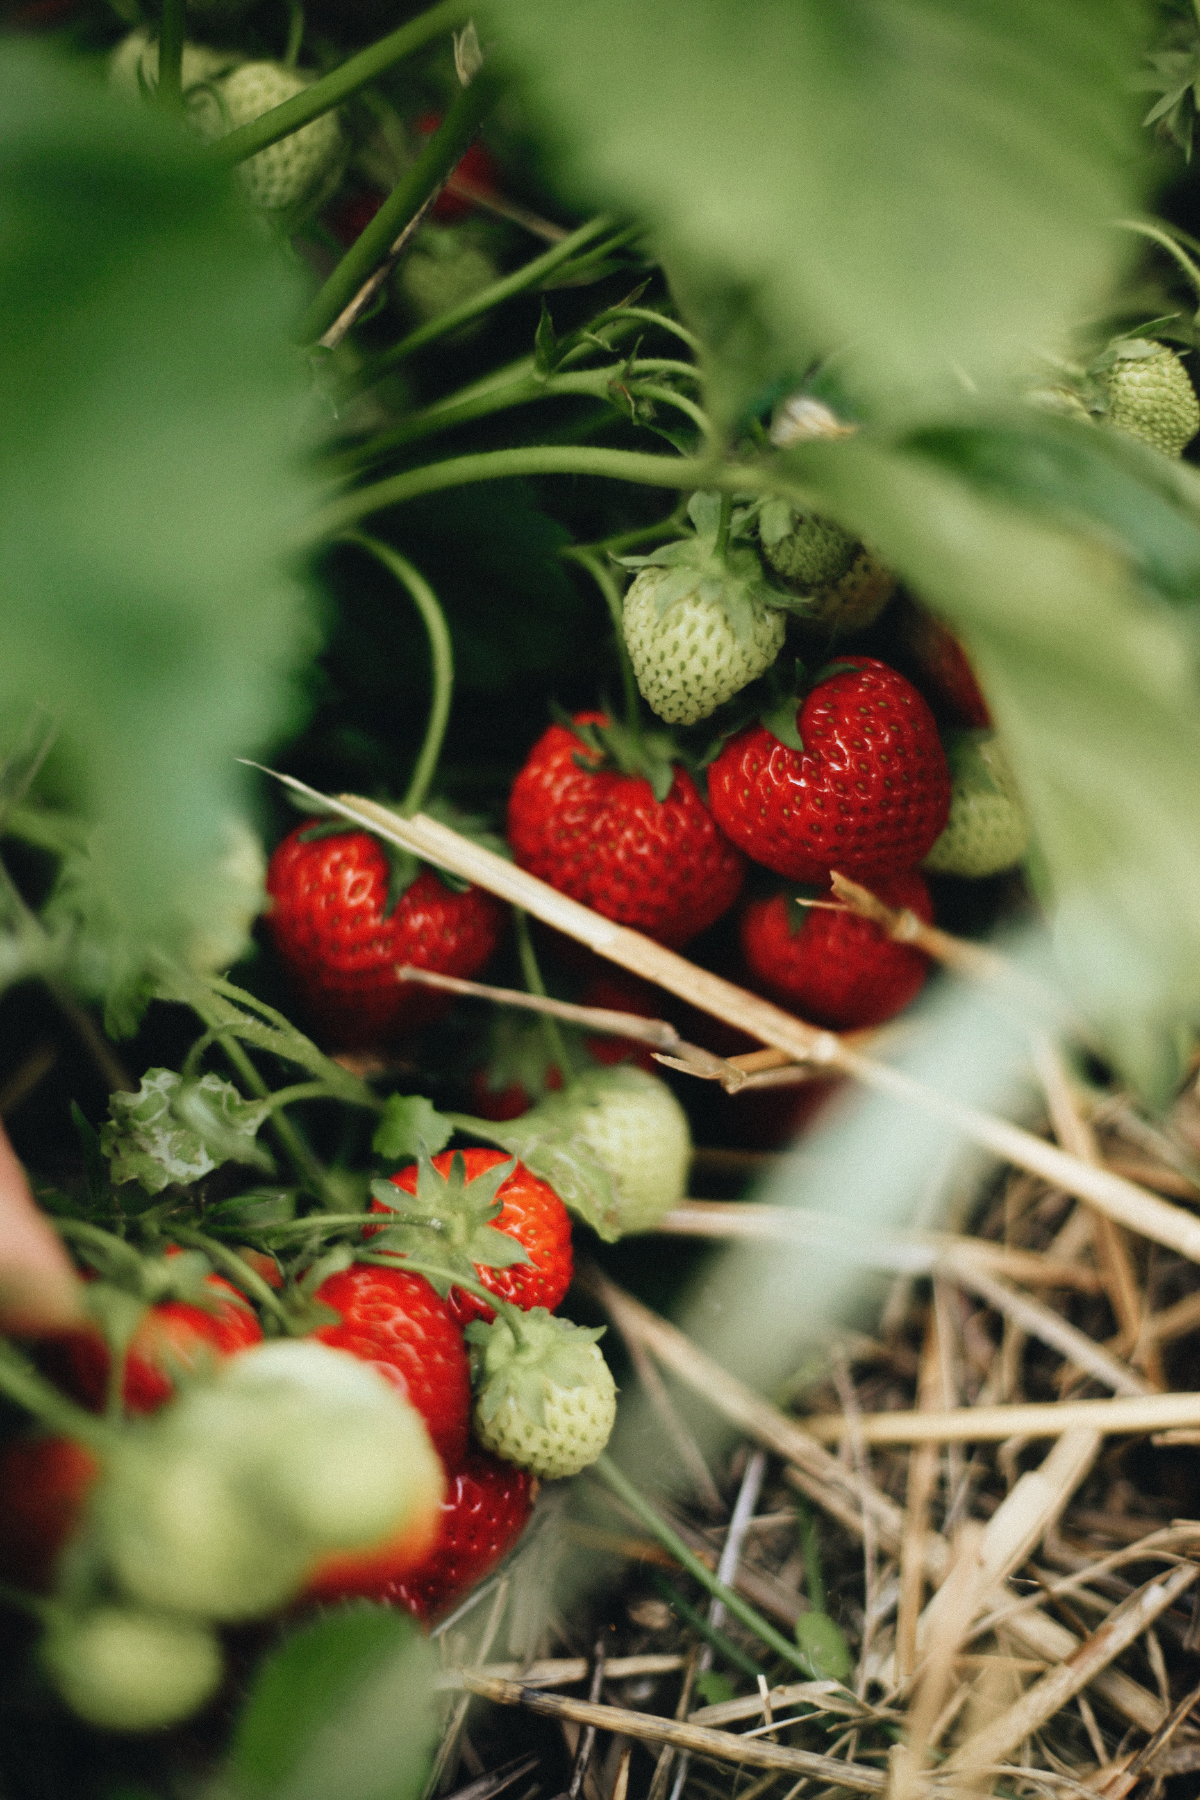 erdbeeren anbauen hochbeet wie viel jahre